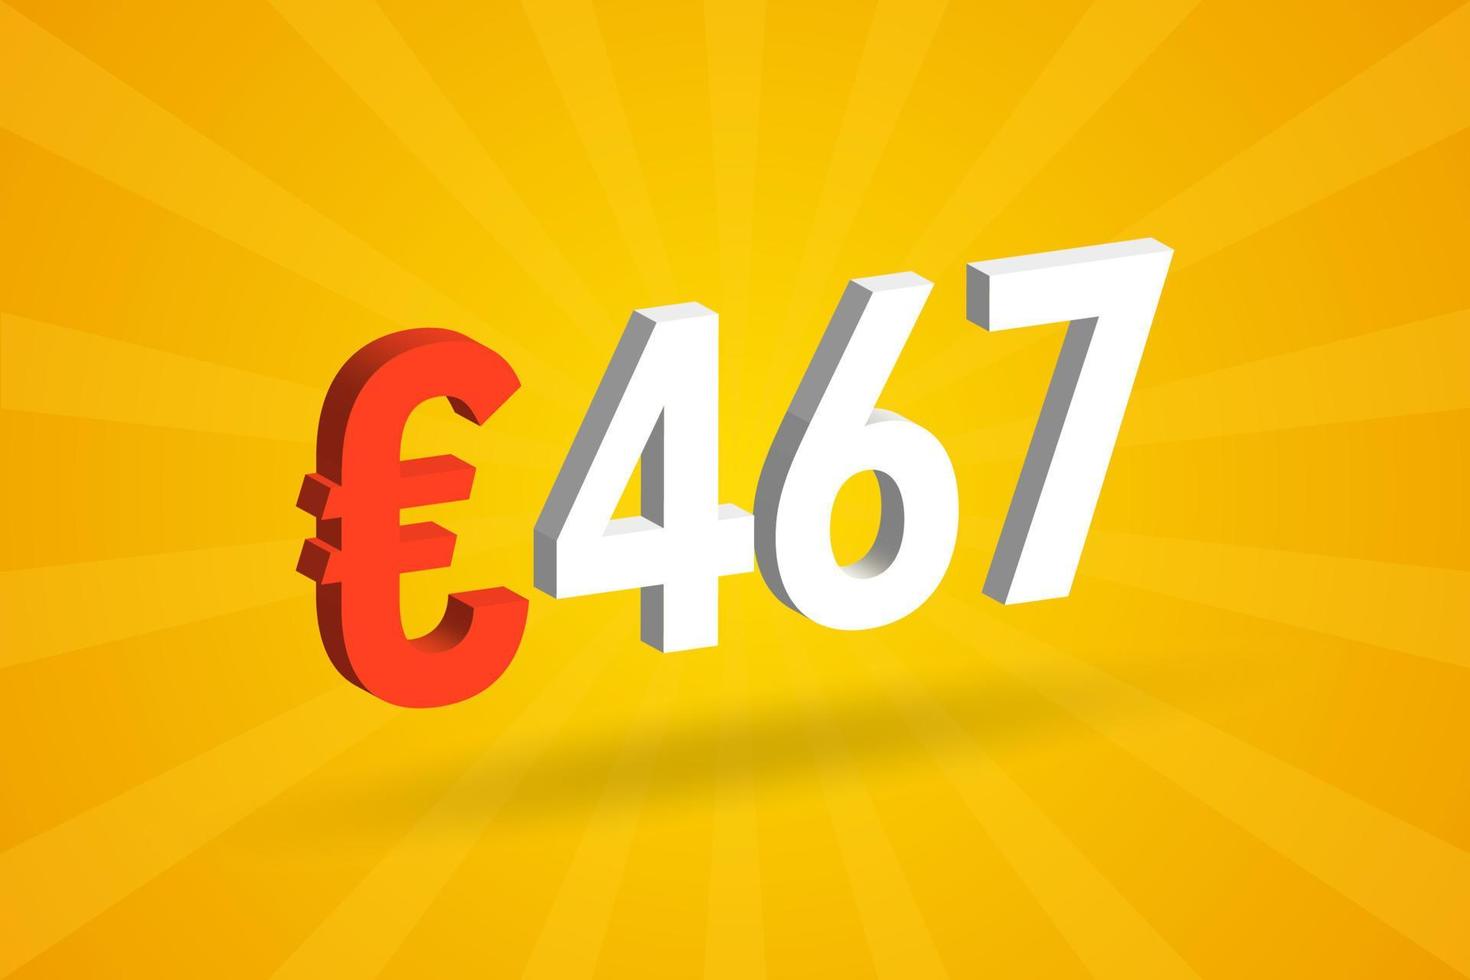 Símbolo de texto de vetor 3d de moeda de 467 euros. vetor de estoque de dinheiro da união europeia 3d 467 euro